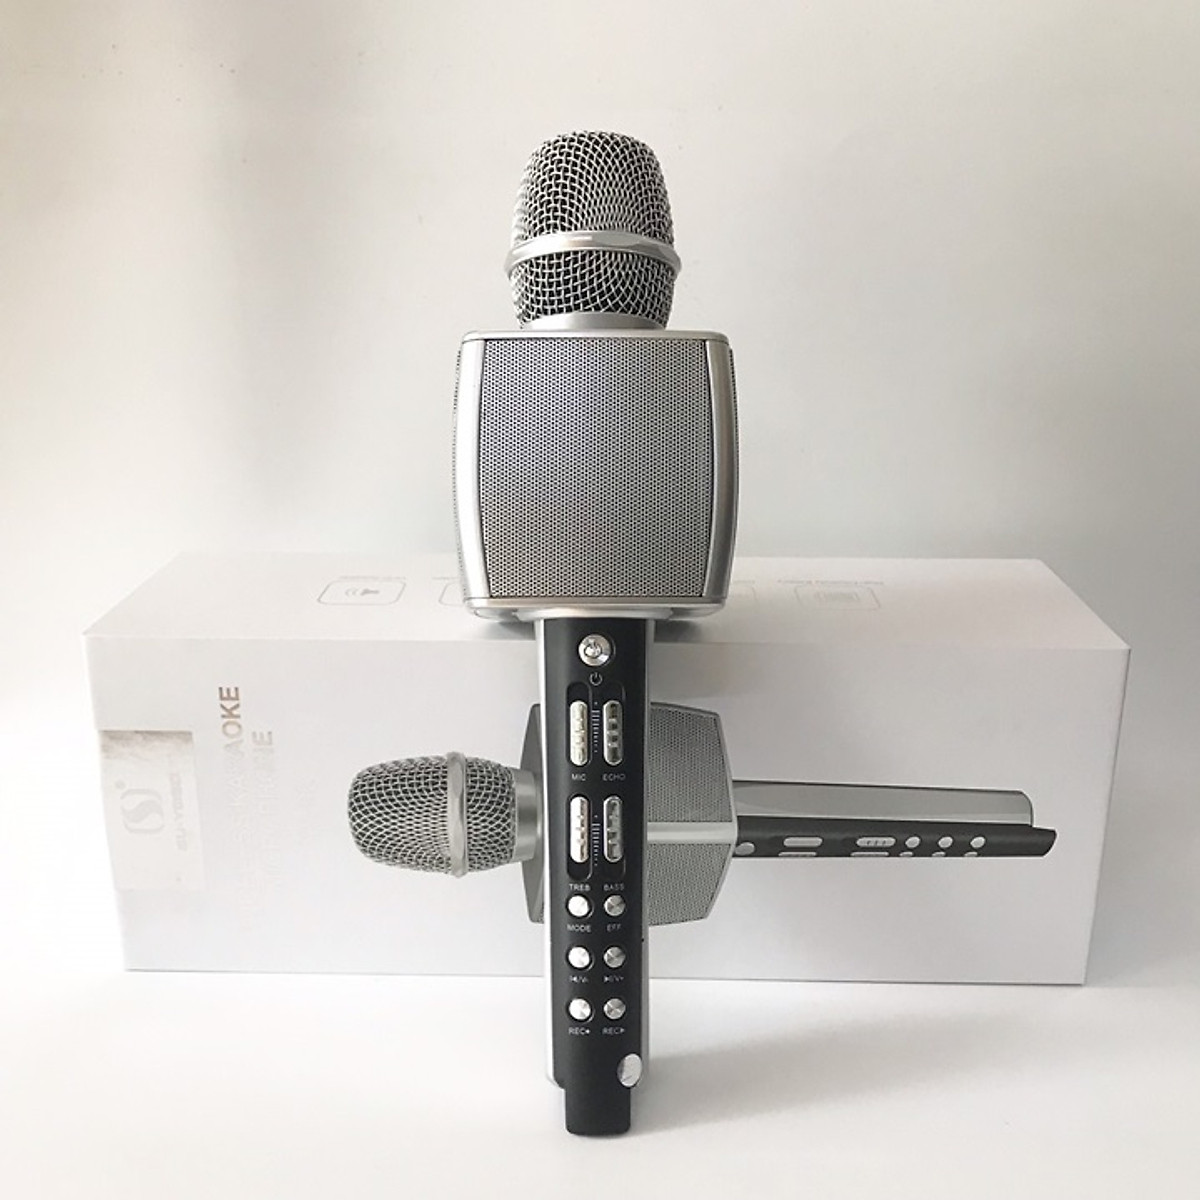 [ Sieu Hót ]Micro karaoke bluetooth YS92 JVJ Không dây kèm loa 3 in 1 - hỗ trợ trợ thu âm, live stream giống như một sound card âm thanh loa lớn, bắt và nâng giọng tốt Bảo Hành 12 Tháng